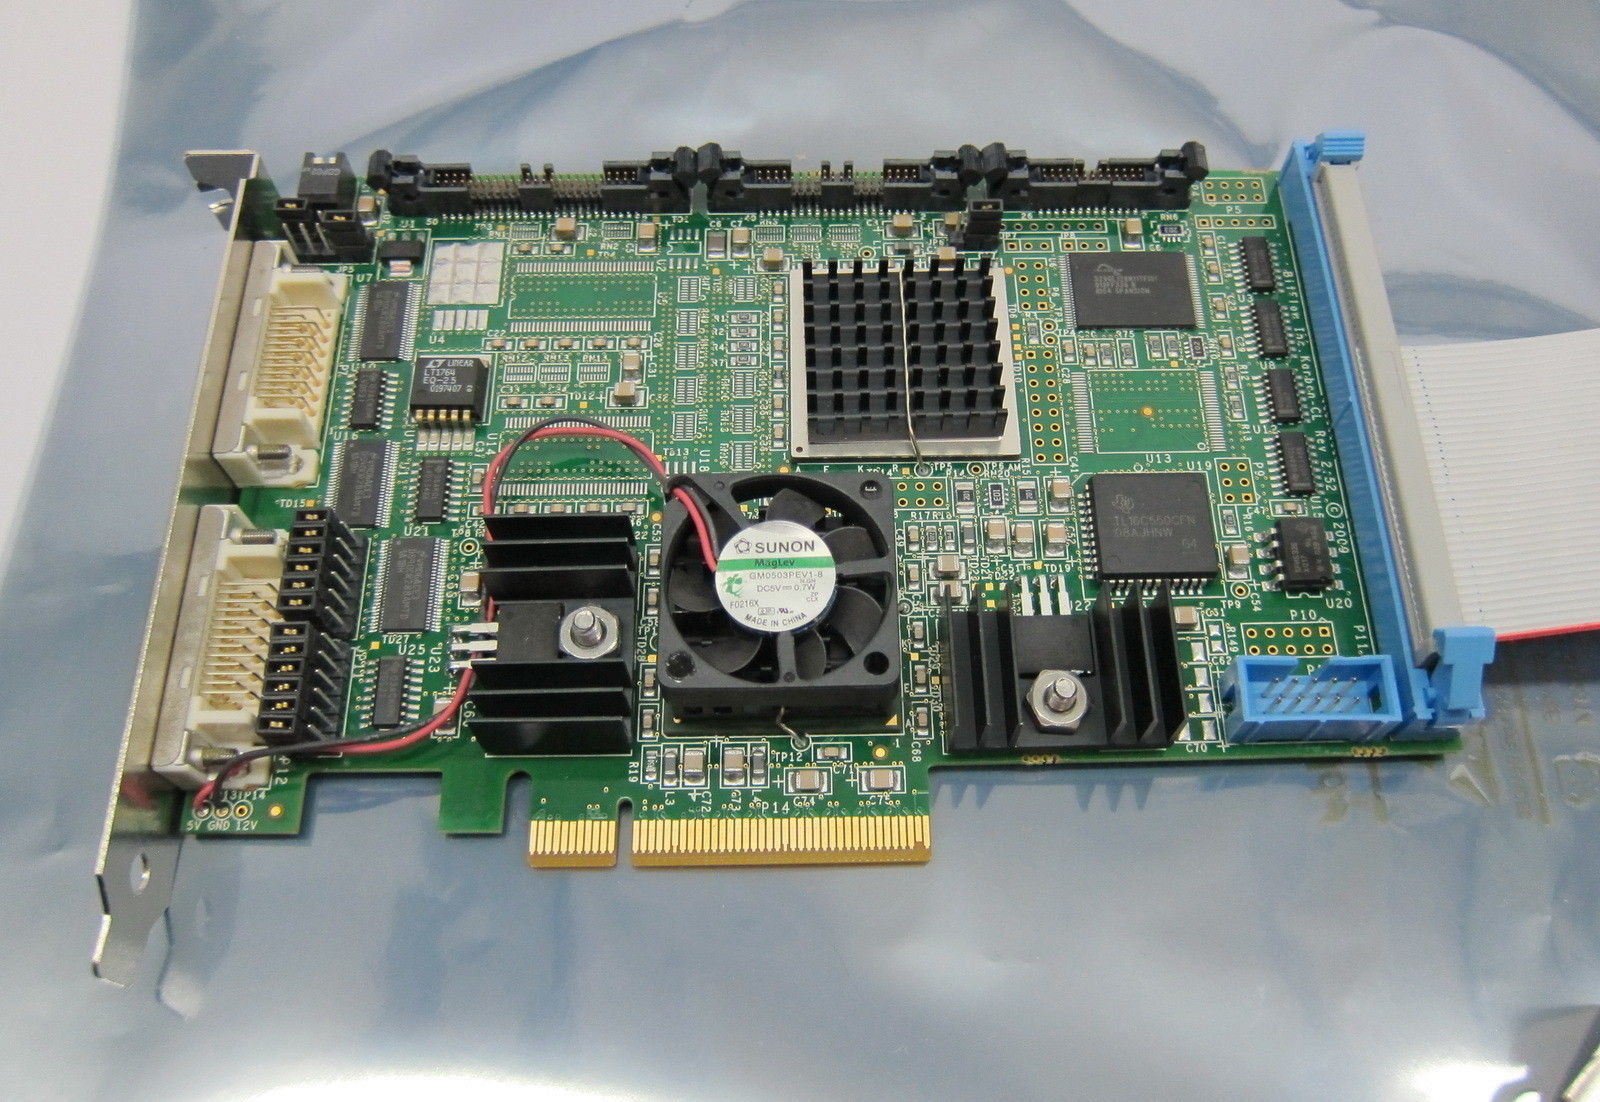 比特流KBN-CL4-2.7 Karbon CL PCIe帧抓取器 原装正品 现货供应 价格优惠 Bitflow,KBN-CL4,比特流,抓取器